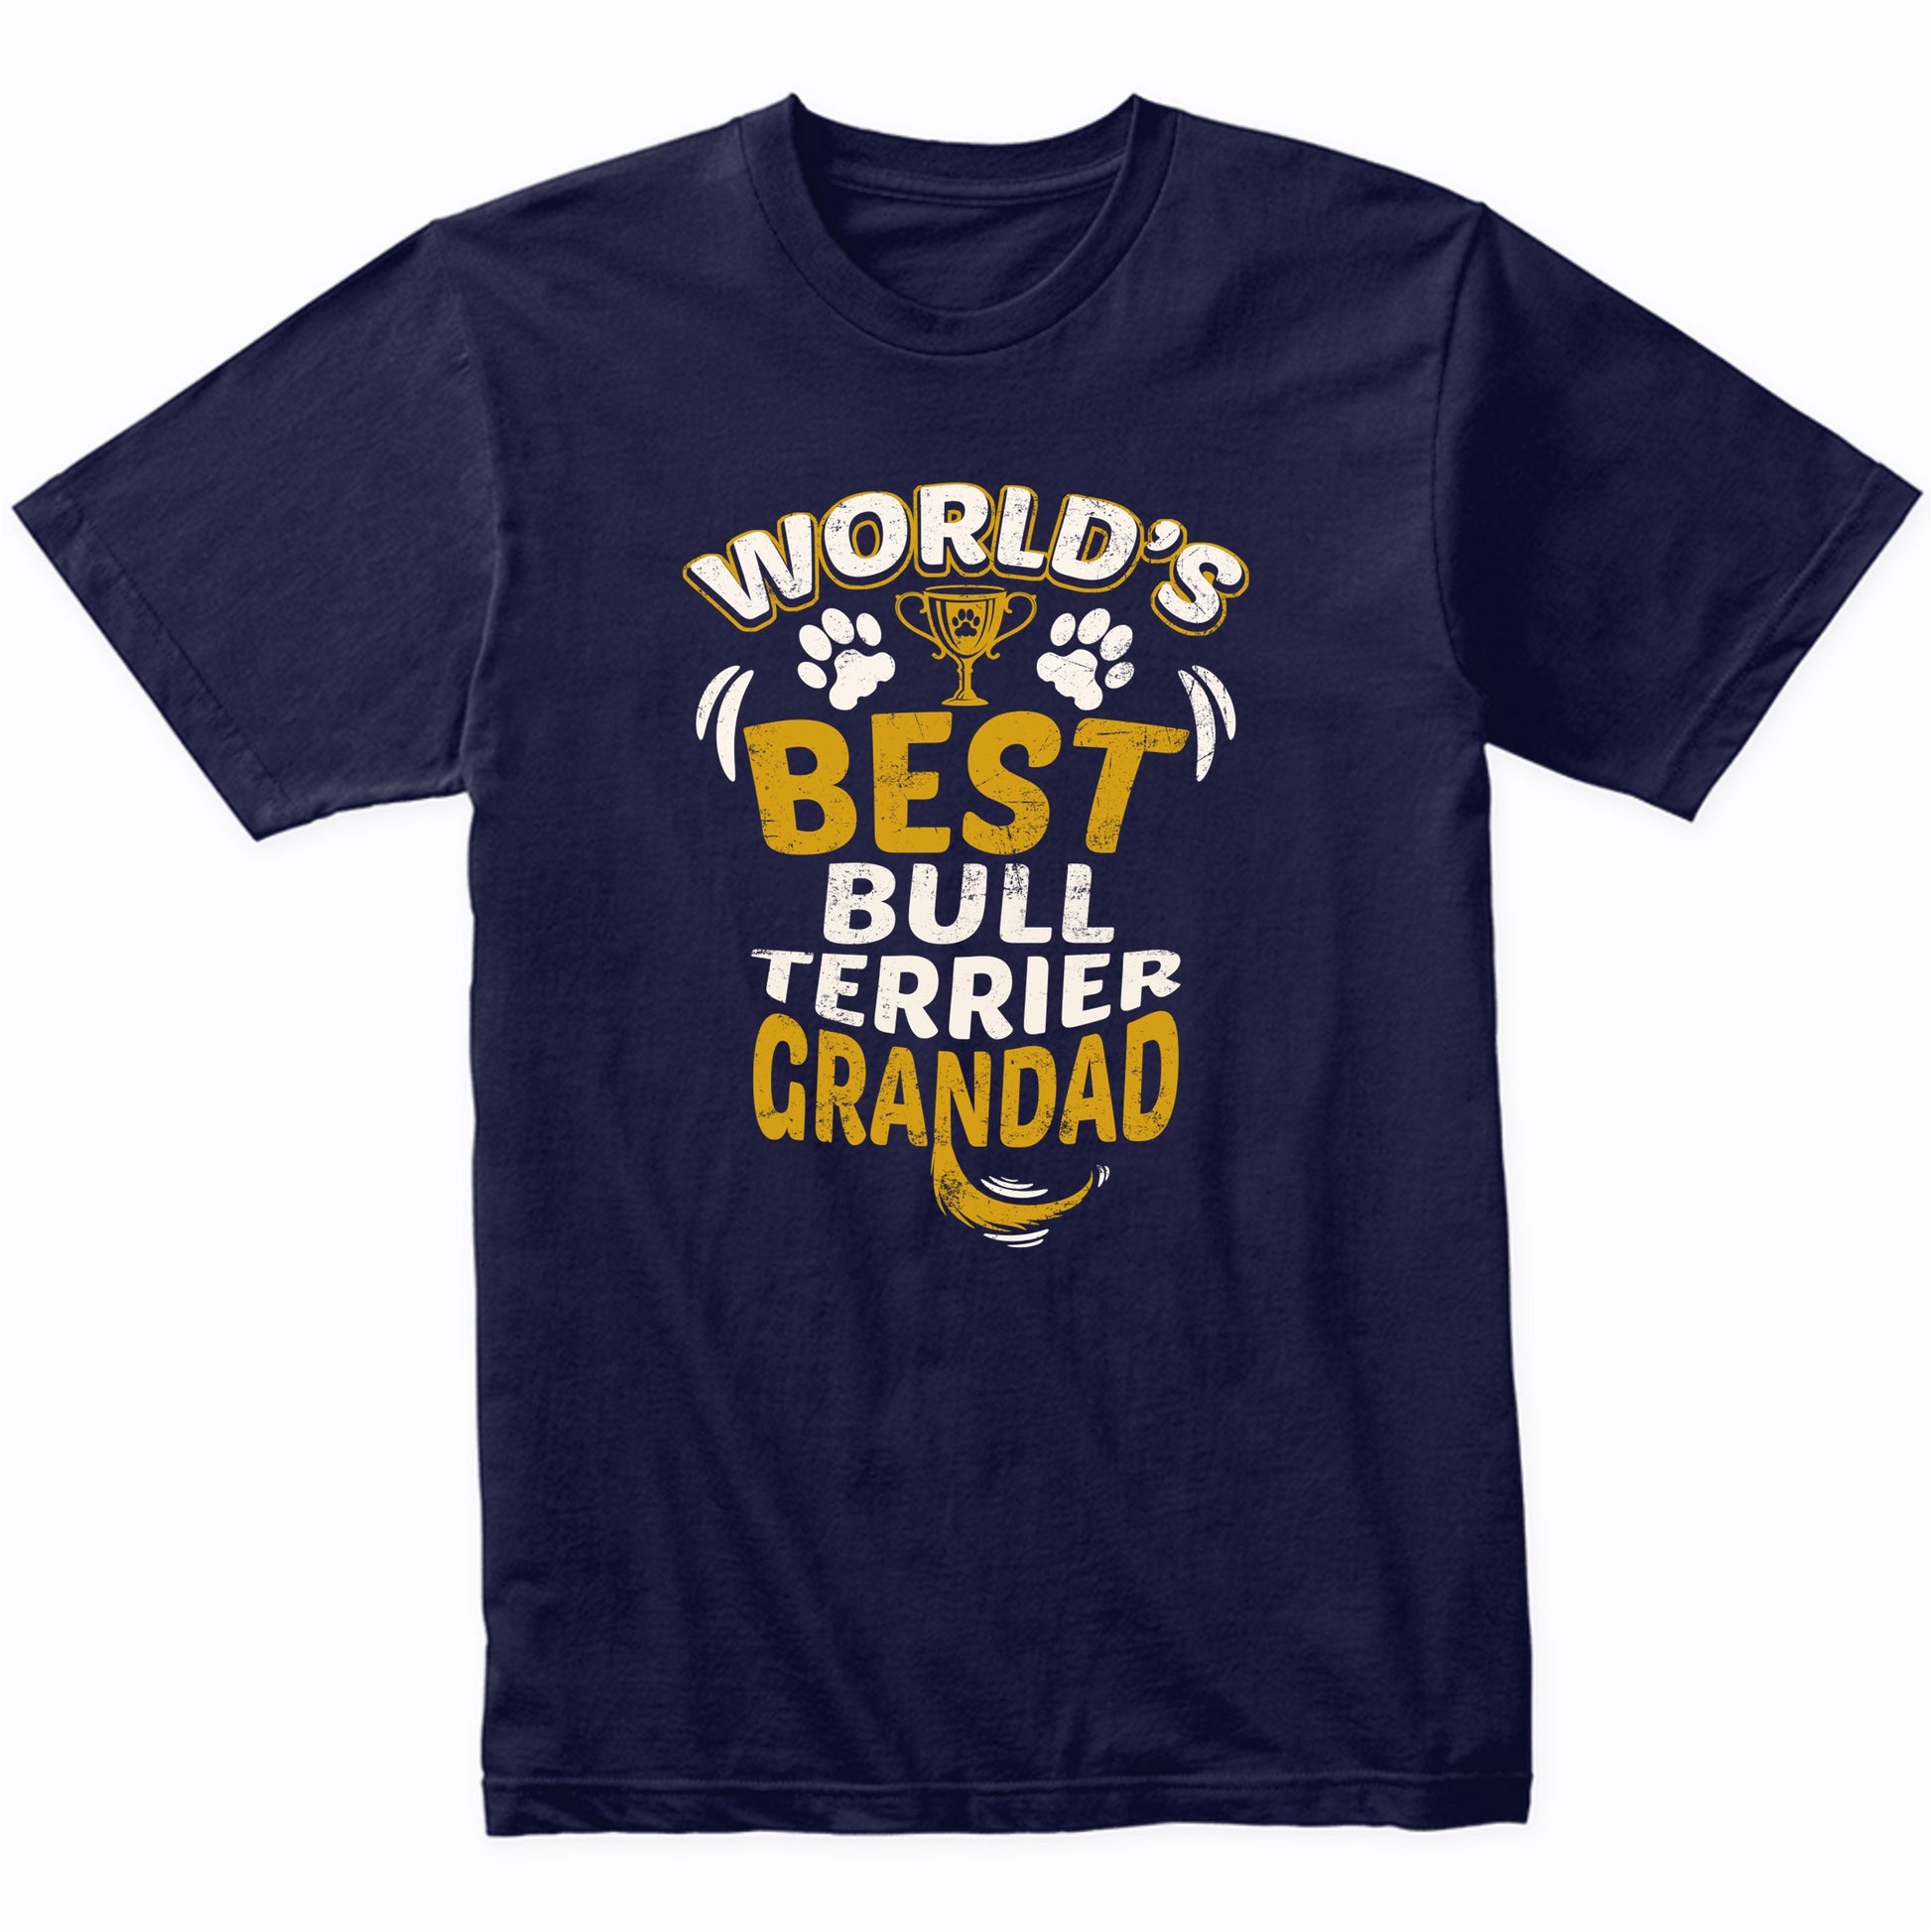 World's Best Bull Terrier Grandad Graphic T-Shirt